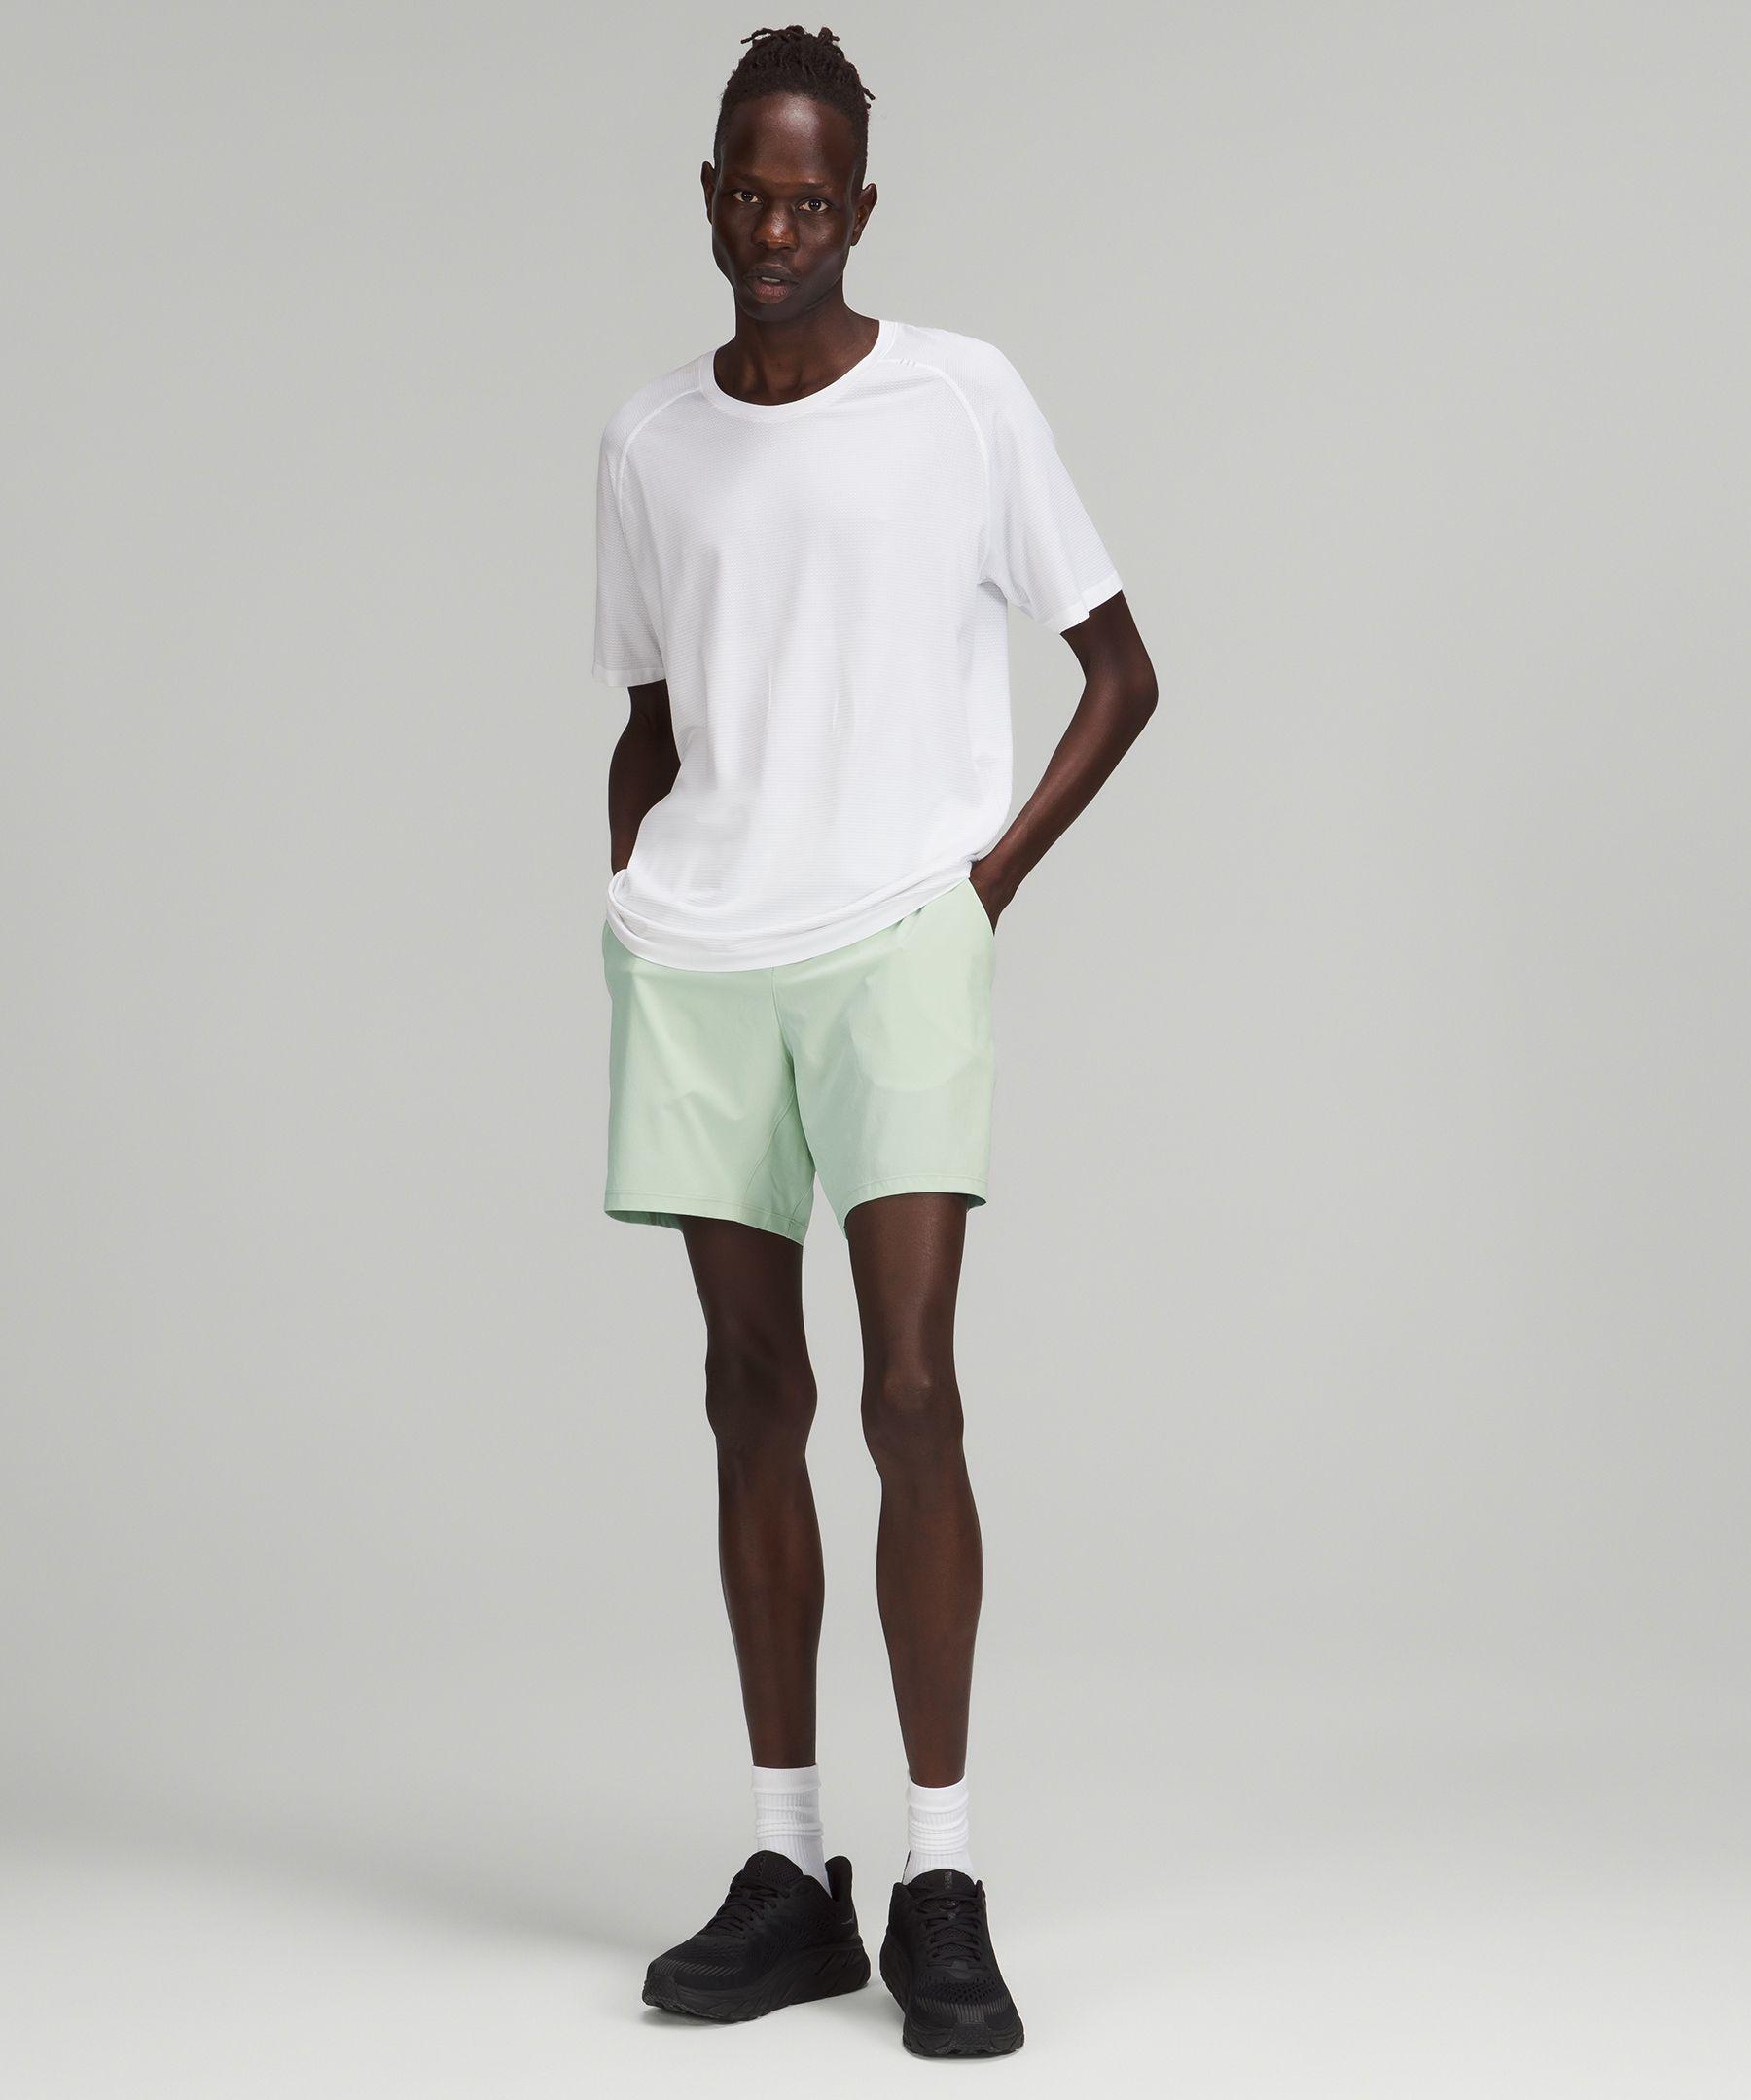 White Training Shorts - Men's T.H.E. Linerless Short 7 - Size S | Lululemon